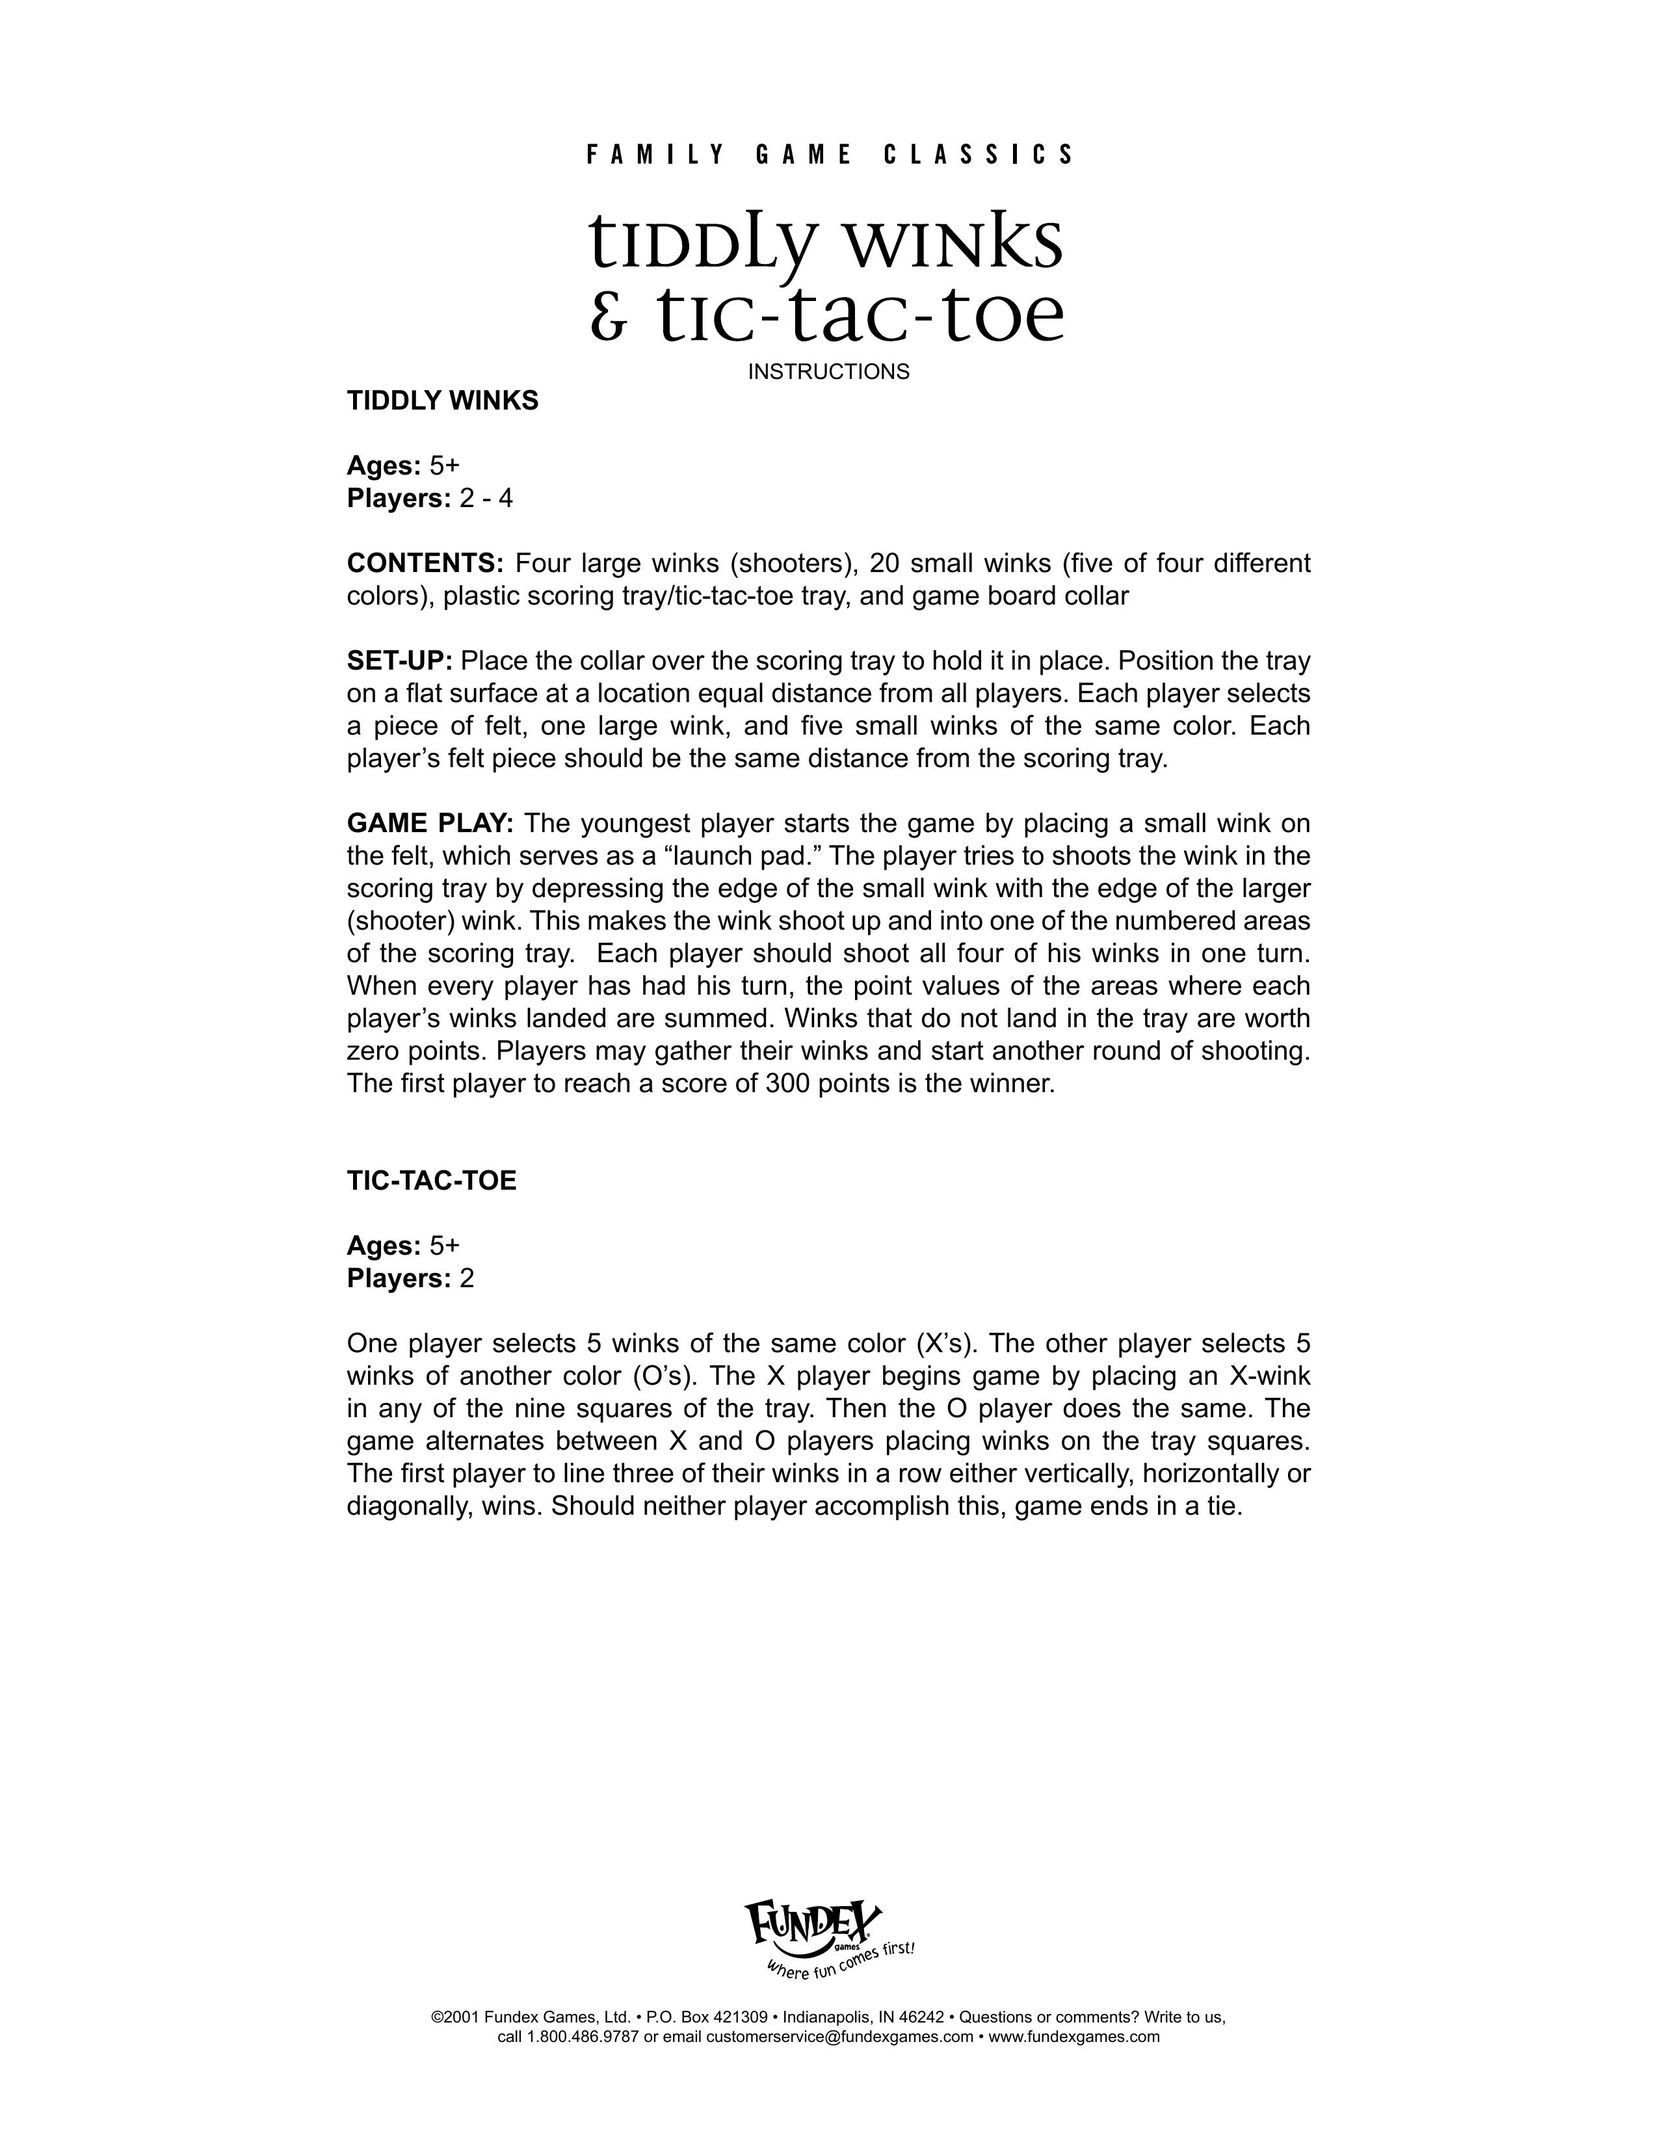 Fundex Games Tic-Tac-Toe Board Games User Manual